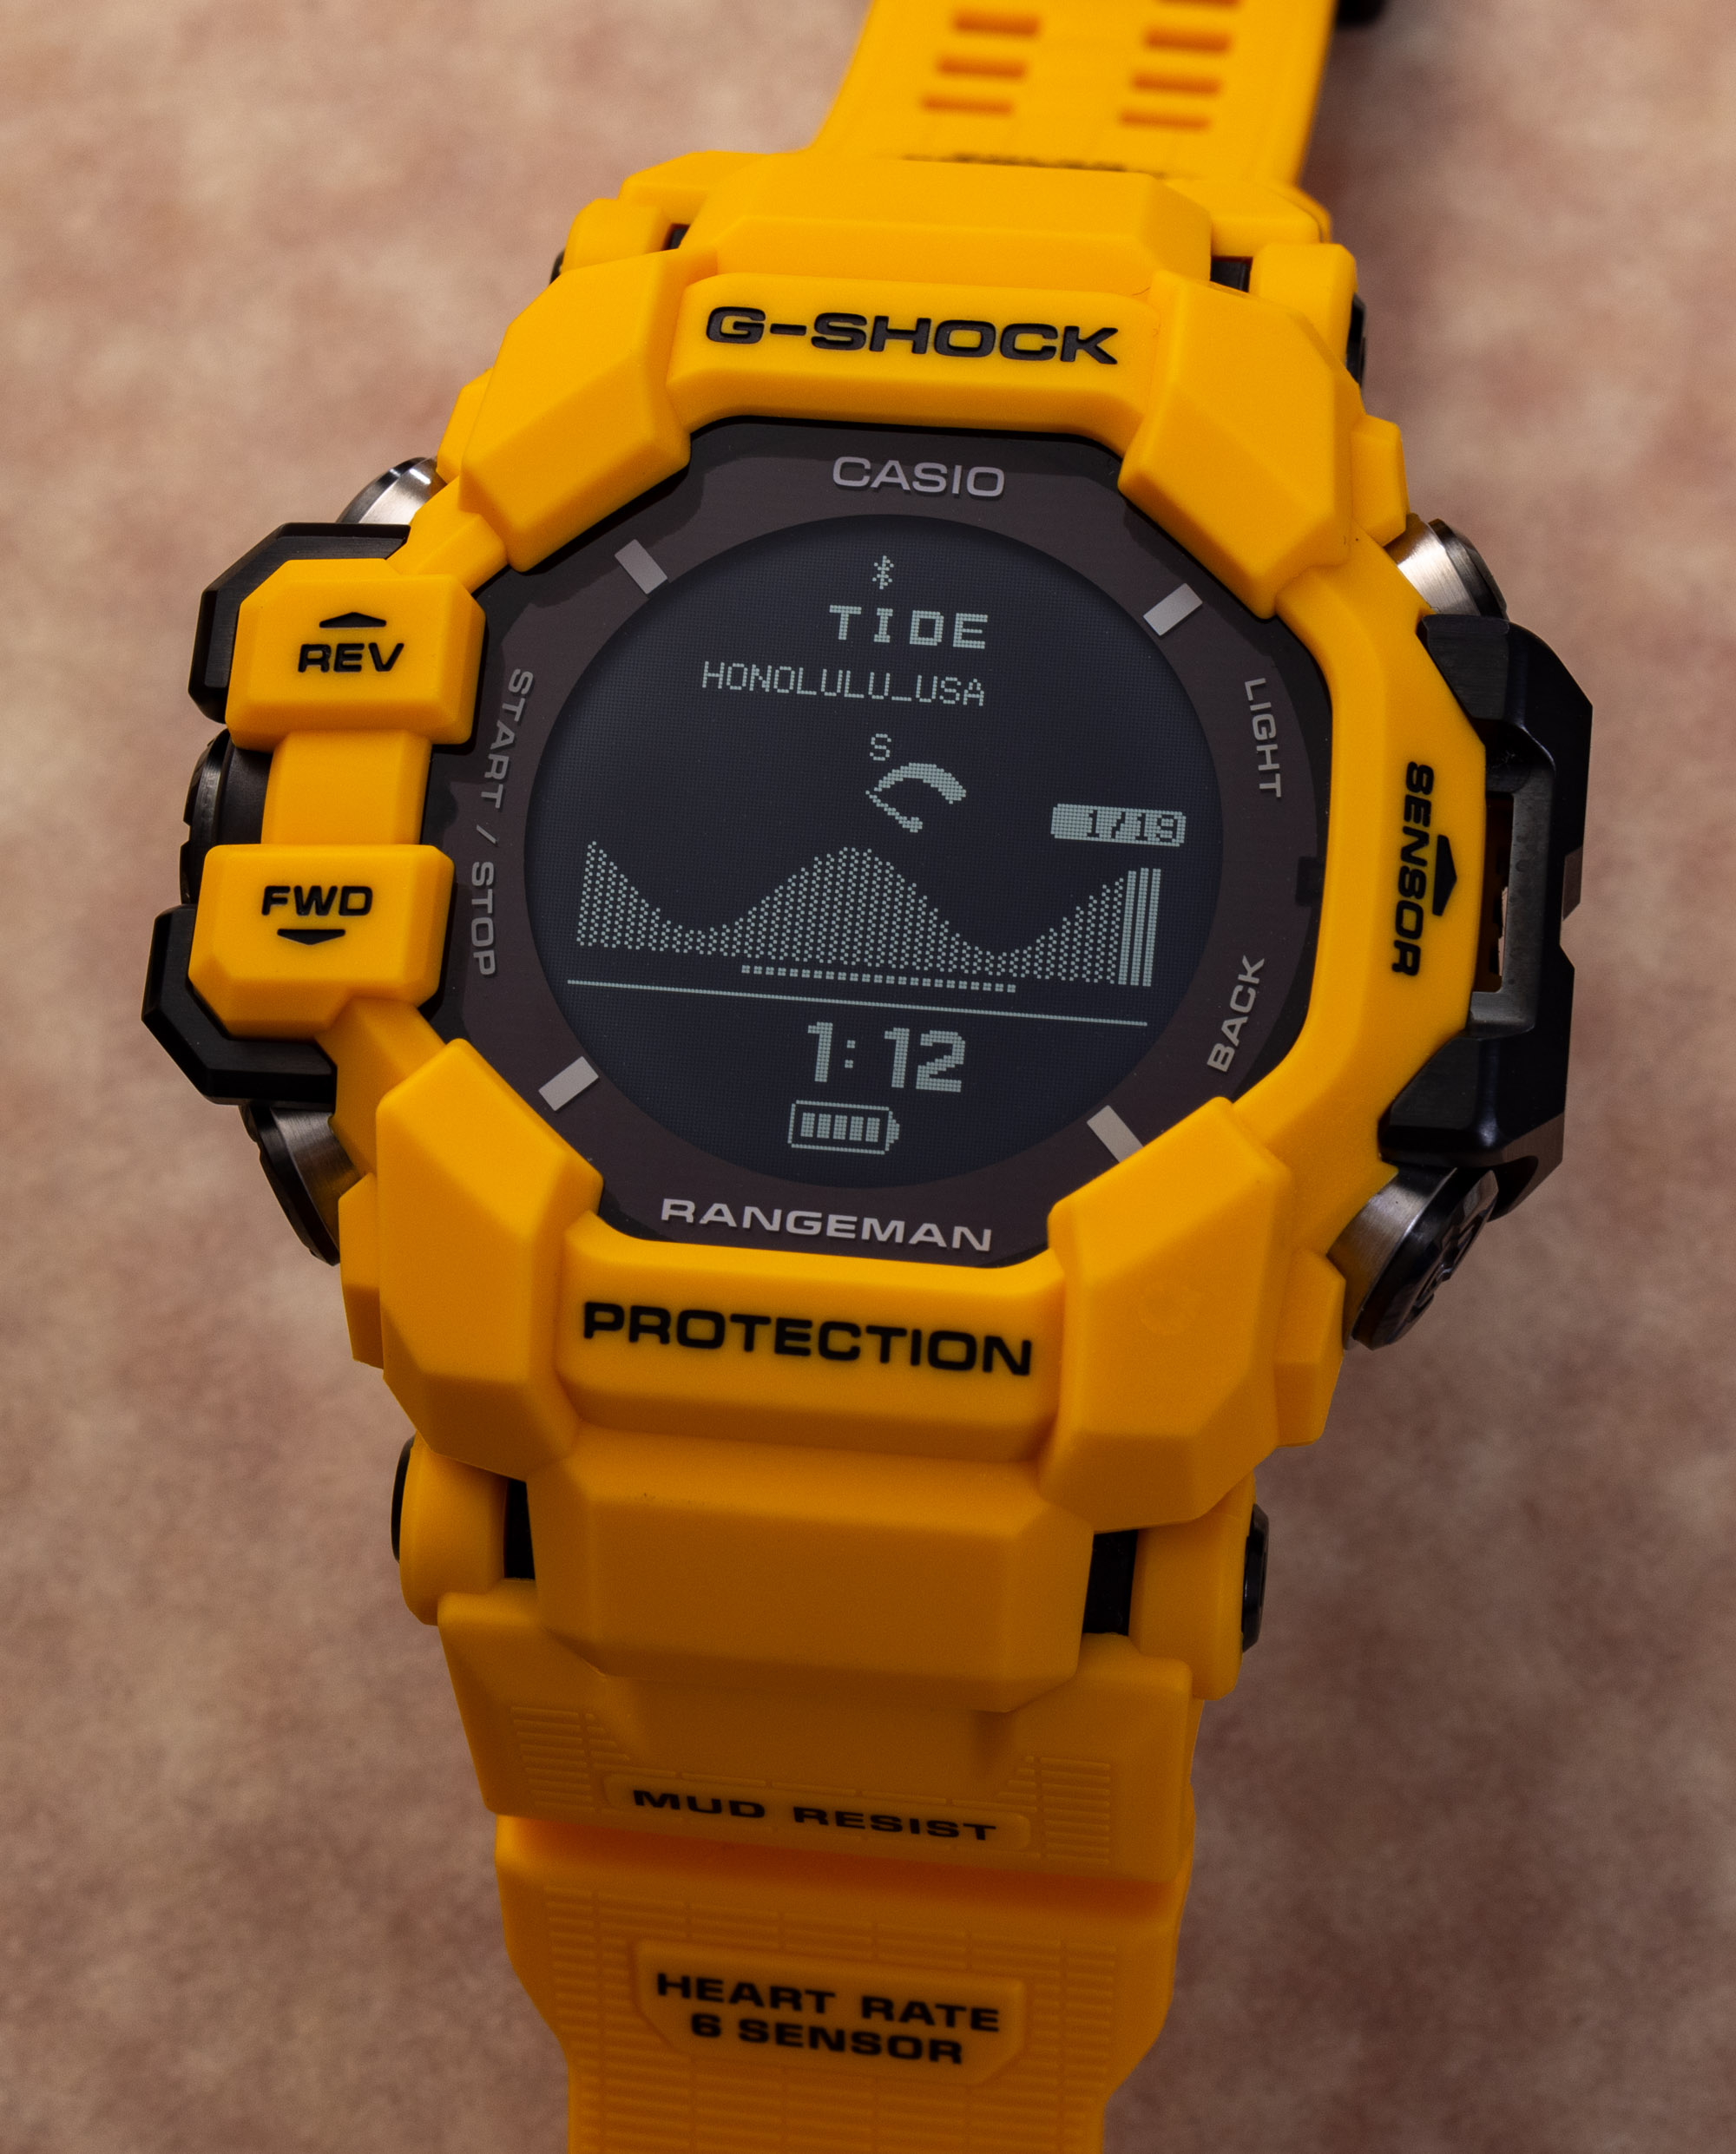 Обзор часов: Casio G-Shock Rangeman GPR-H1000 - это "мадмастер" среди часов Move